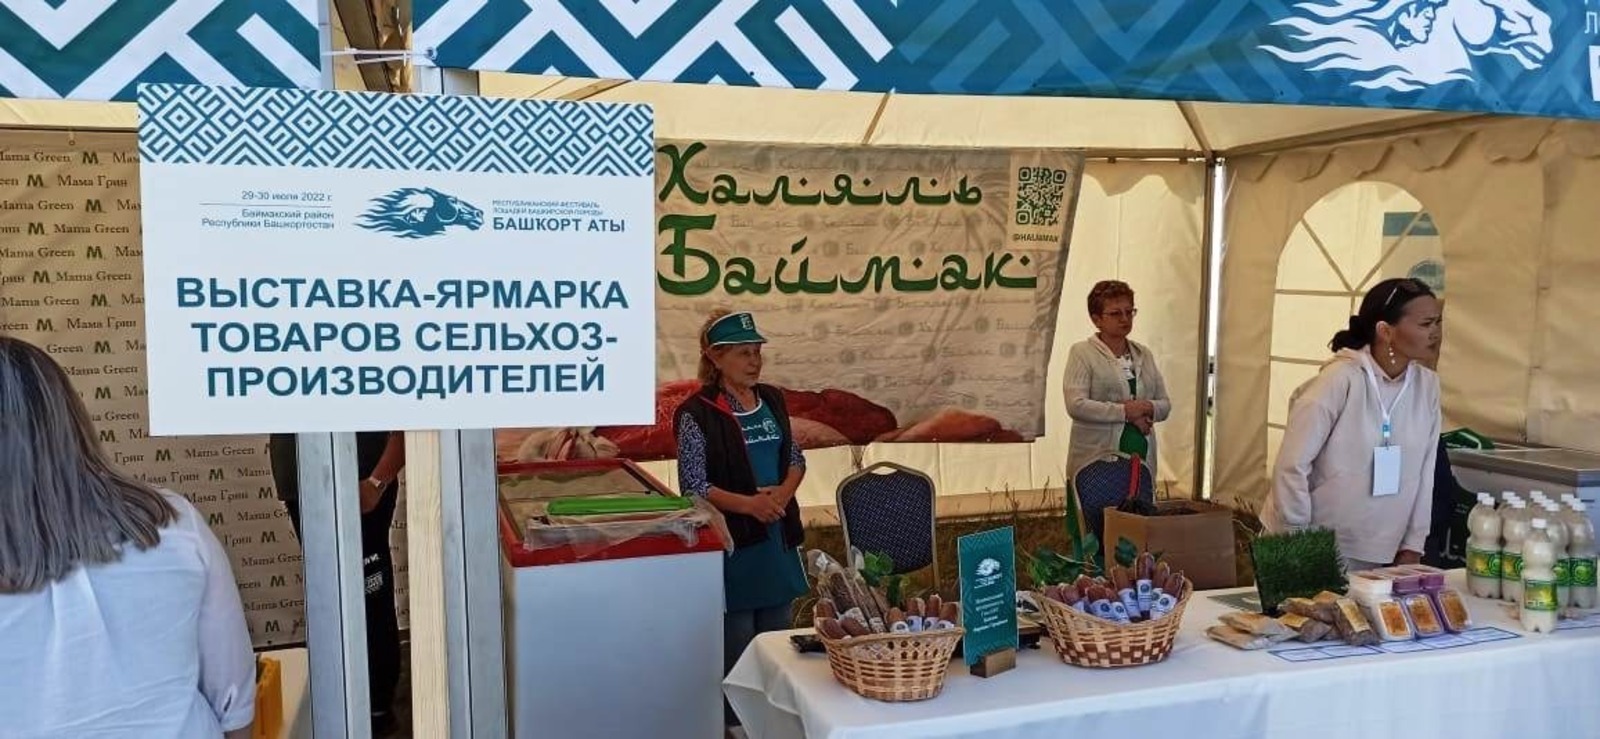 На выставке народных промыслов фестиваля «Башкорт аты» представлены уникальные работы башкирских мастеров